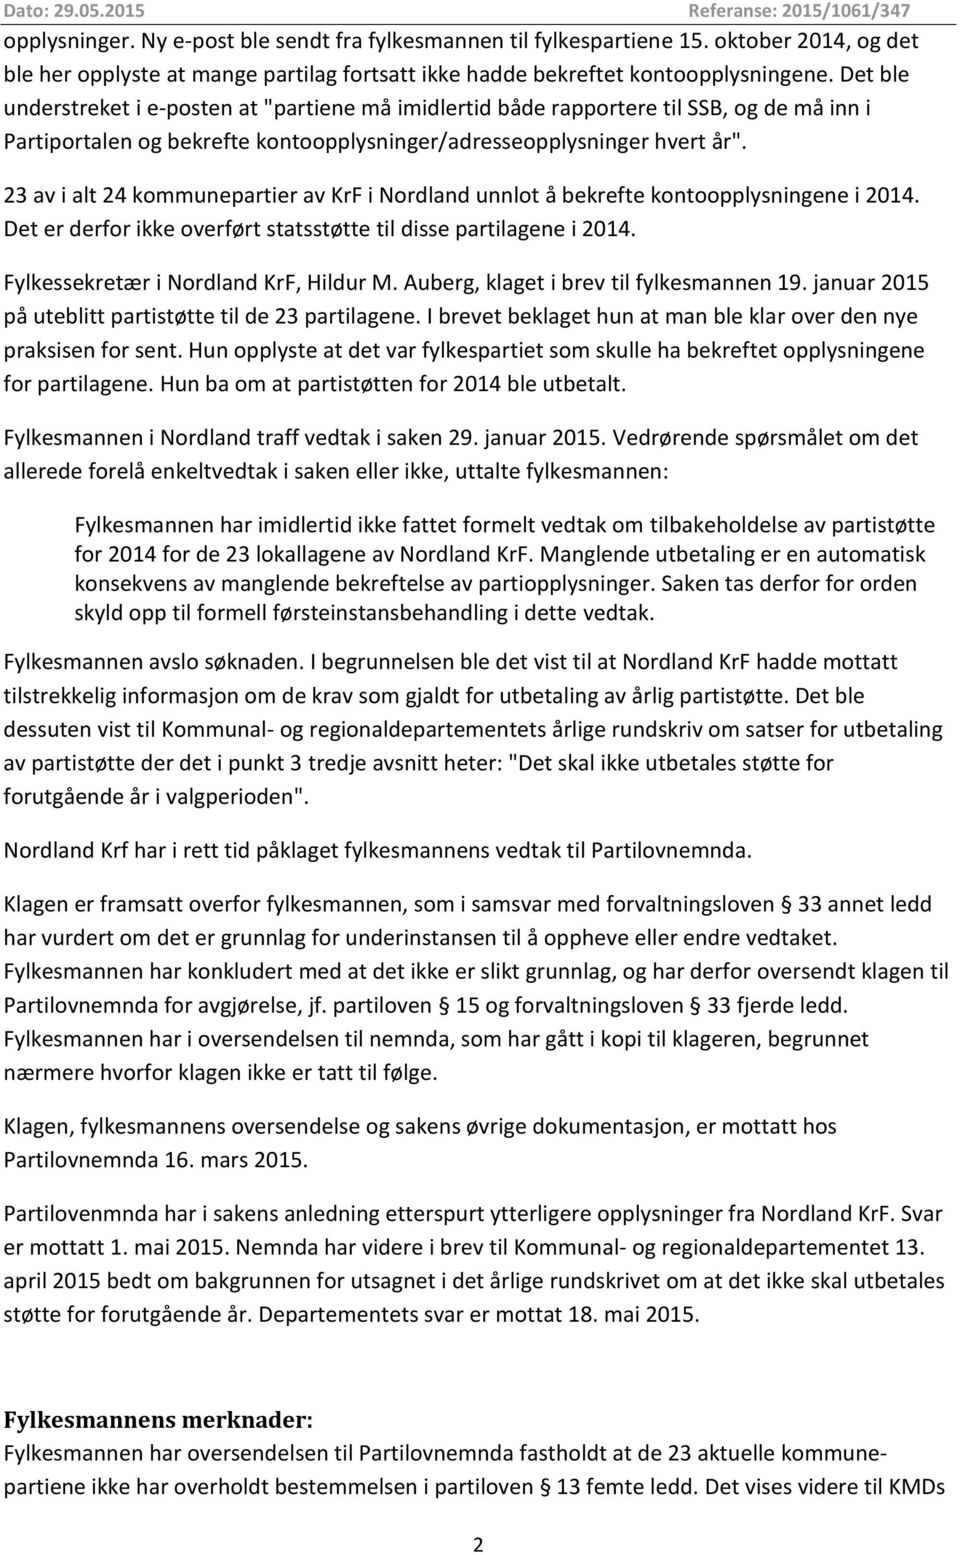 23 av i alt 24 kommunepartier av KrF i Nordland unnlot å bekrefte kontoopplysningene i 2014. Det er derfor ikke overført statsstøtte til disse partilagene i 2014.